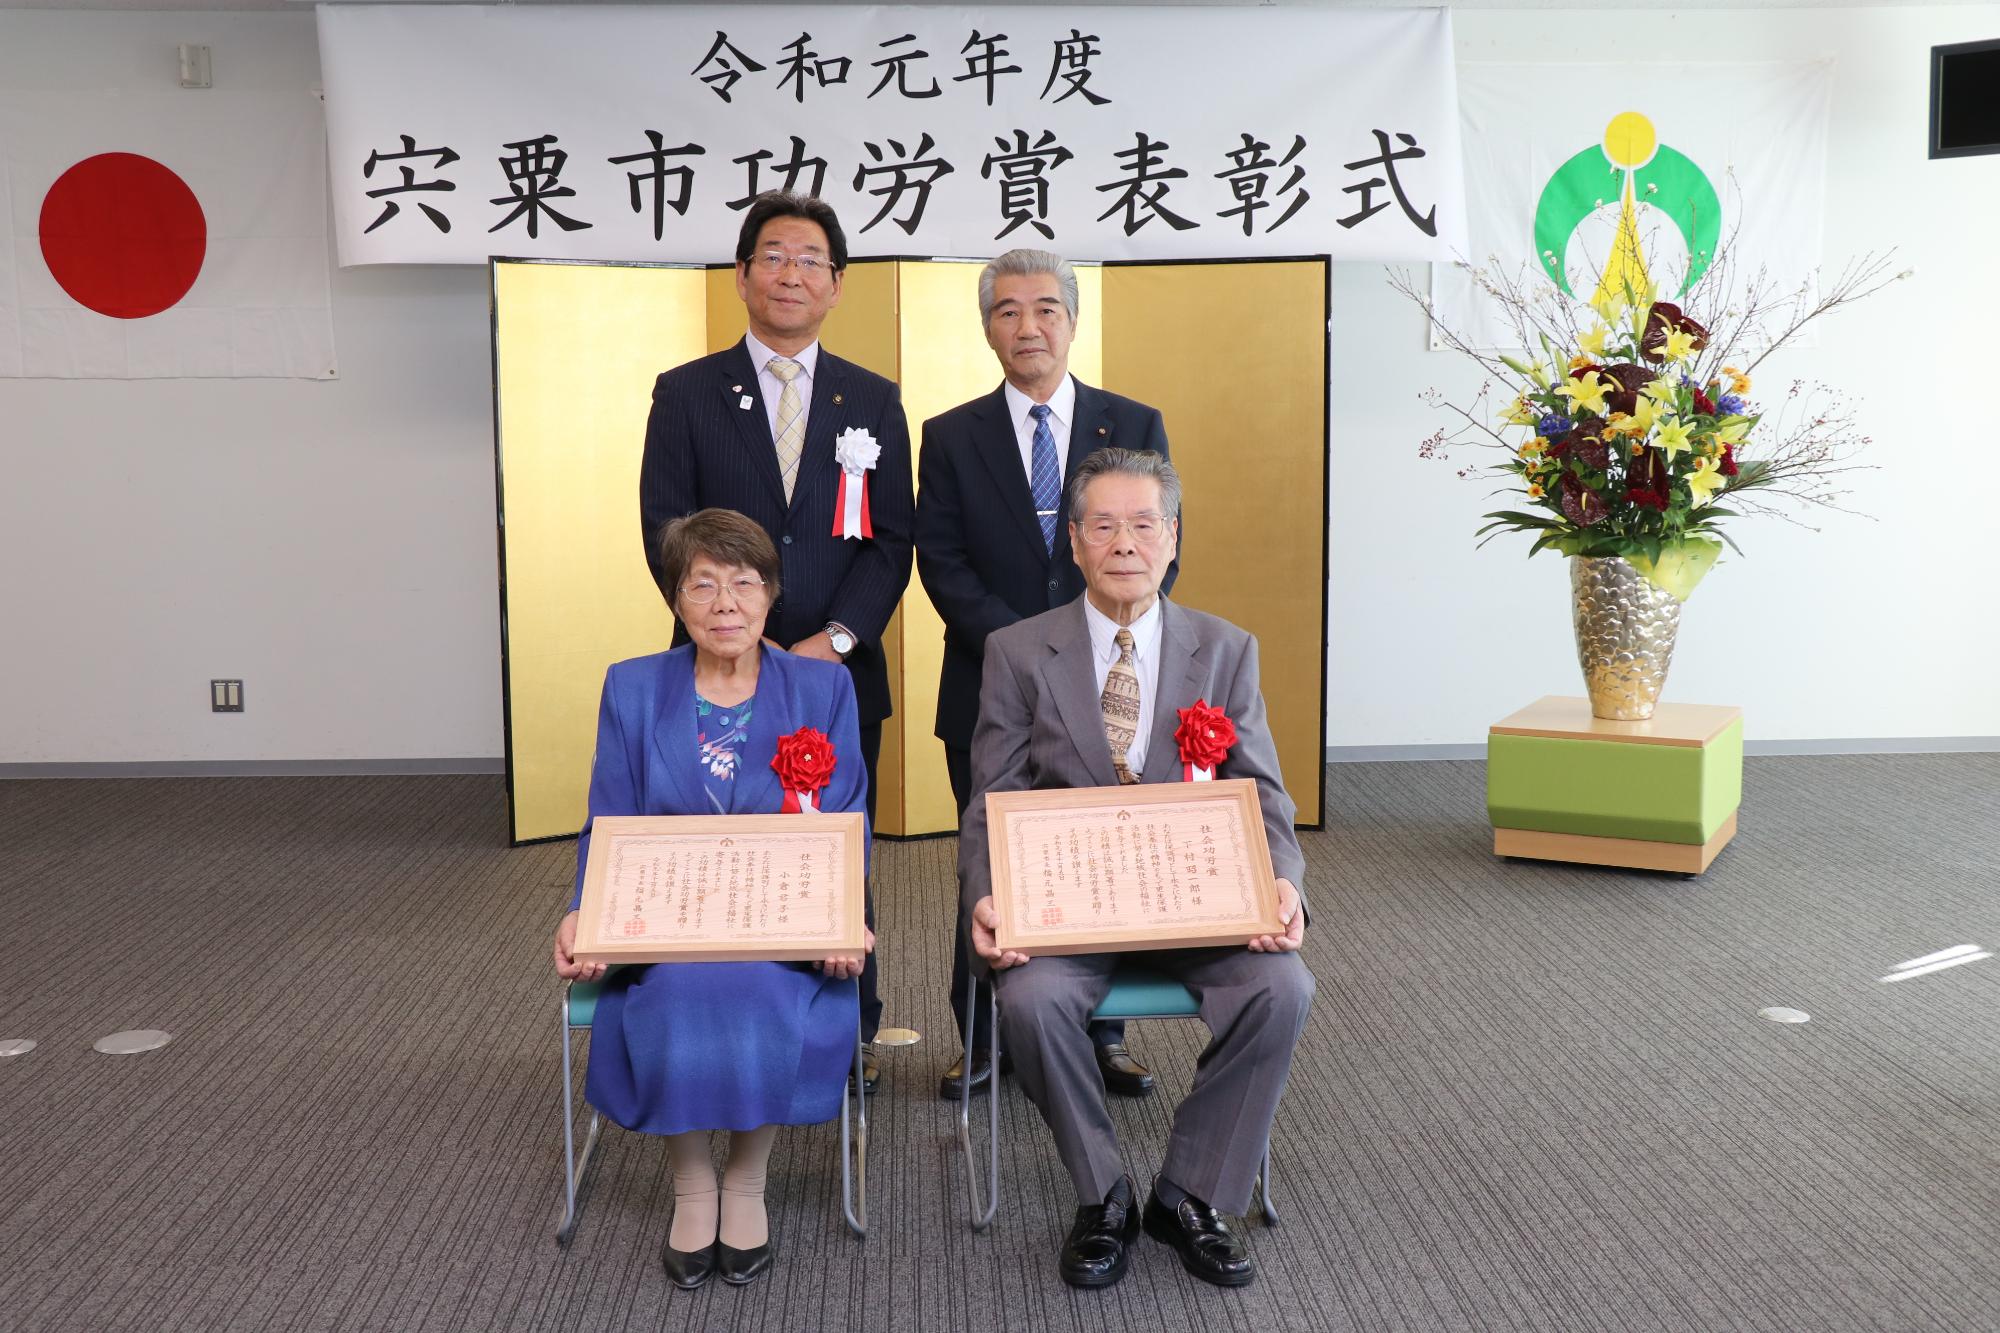 賞状を持った功労賞受賞者2名と市長と議長が金屏風の前に並んでいる写真